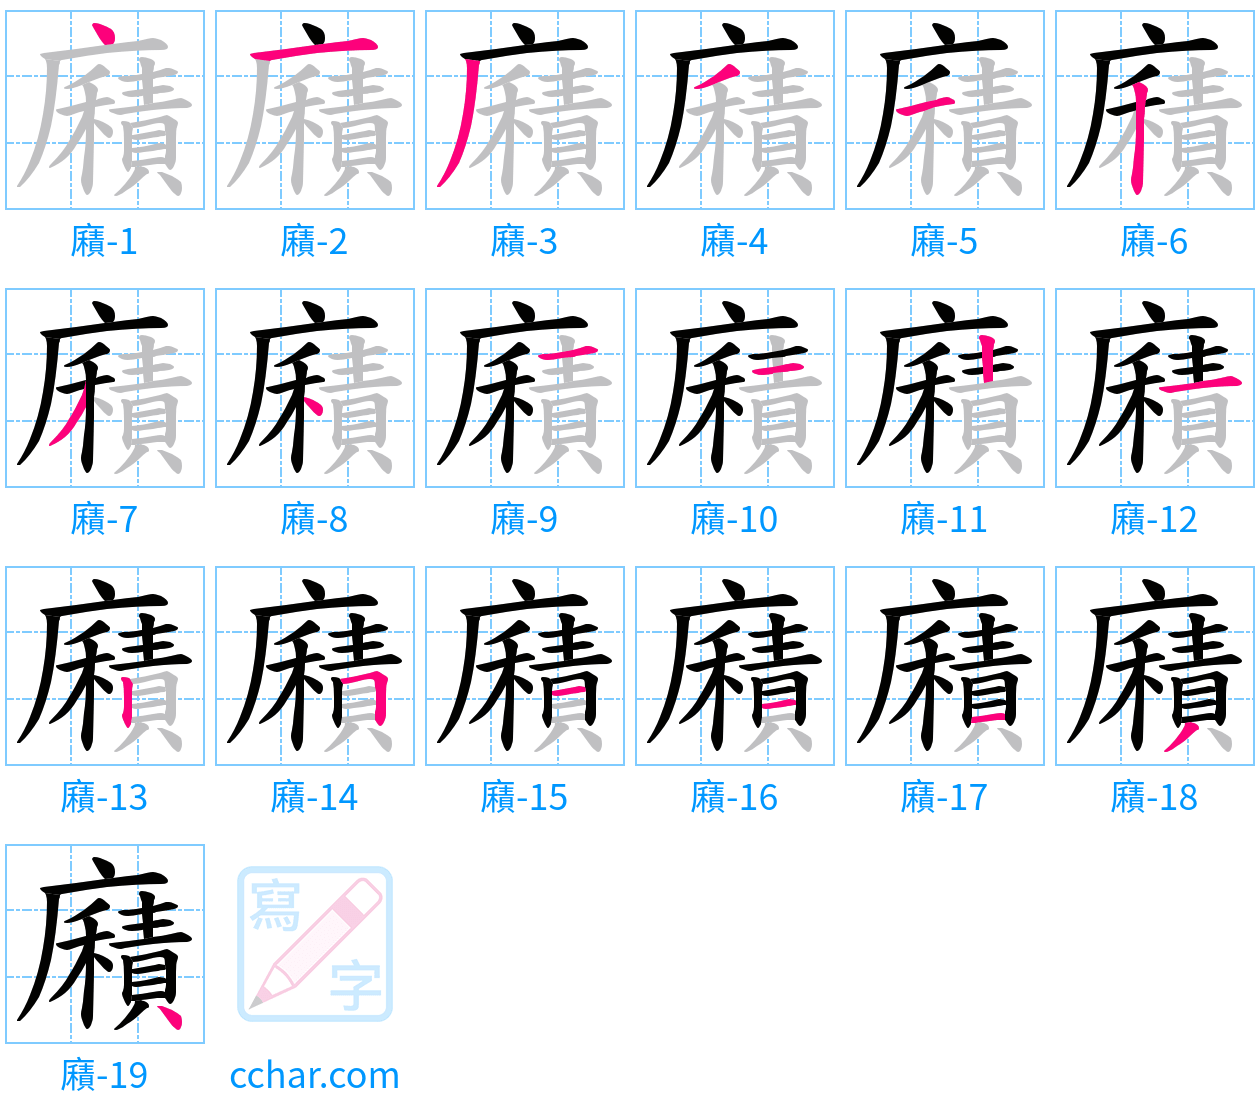 廭 stroke order step-by-step diagram